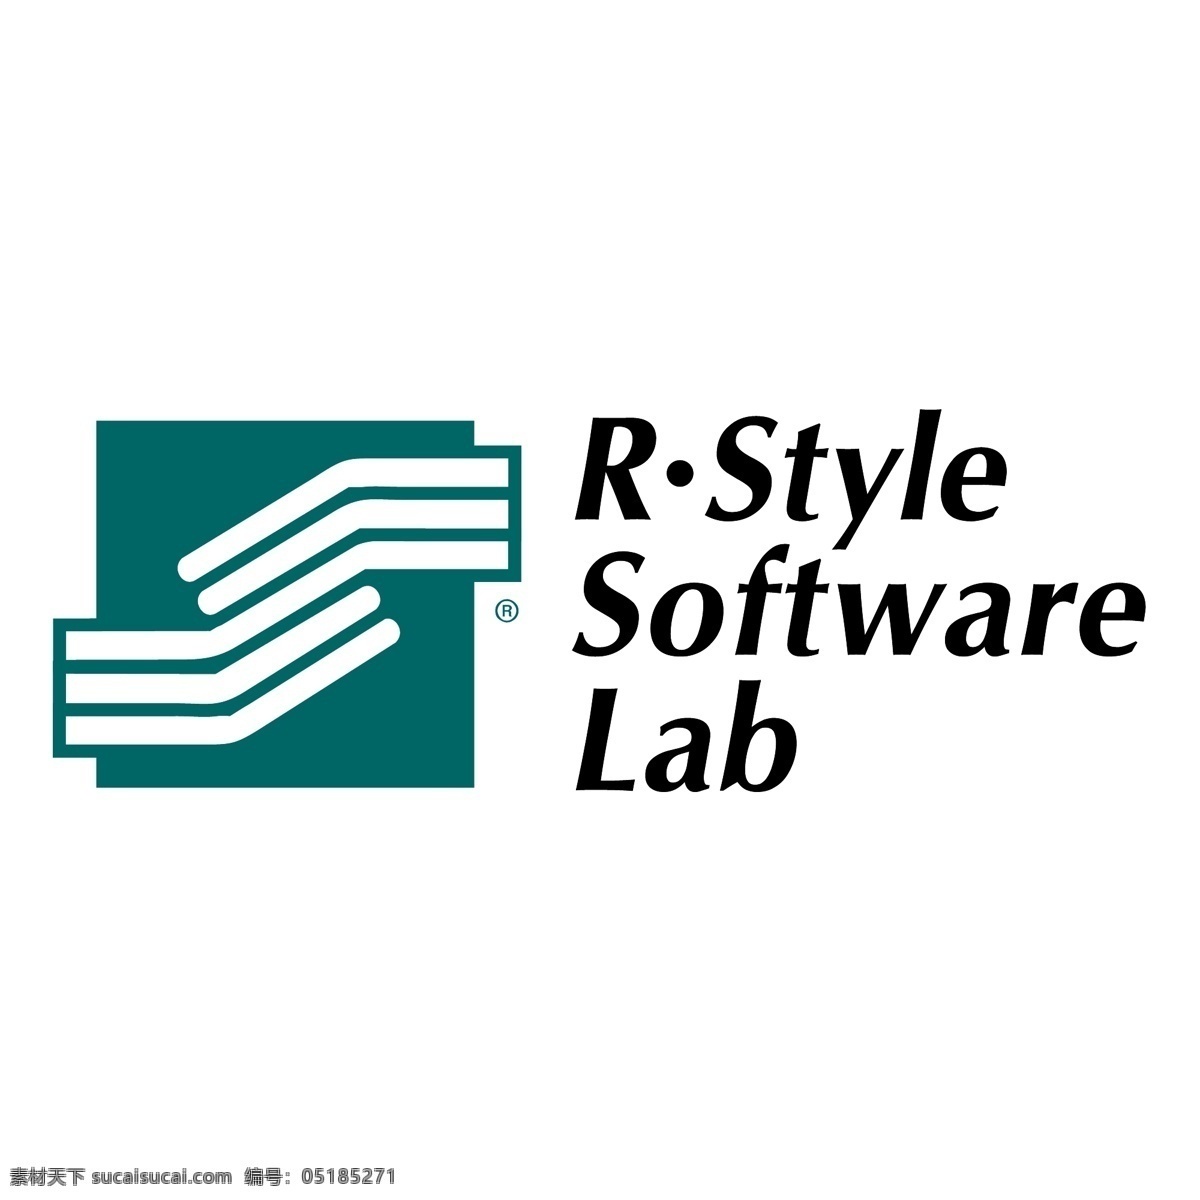 r 型 软件 实验室 风格 艺术风格 风格的软件 软件实验室 矢量型软件 矢量 实验室的风格 自由式设计 图形风格 免费 图形 建筑家居